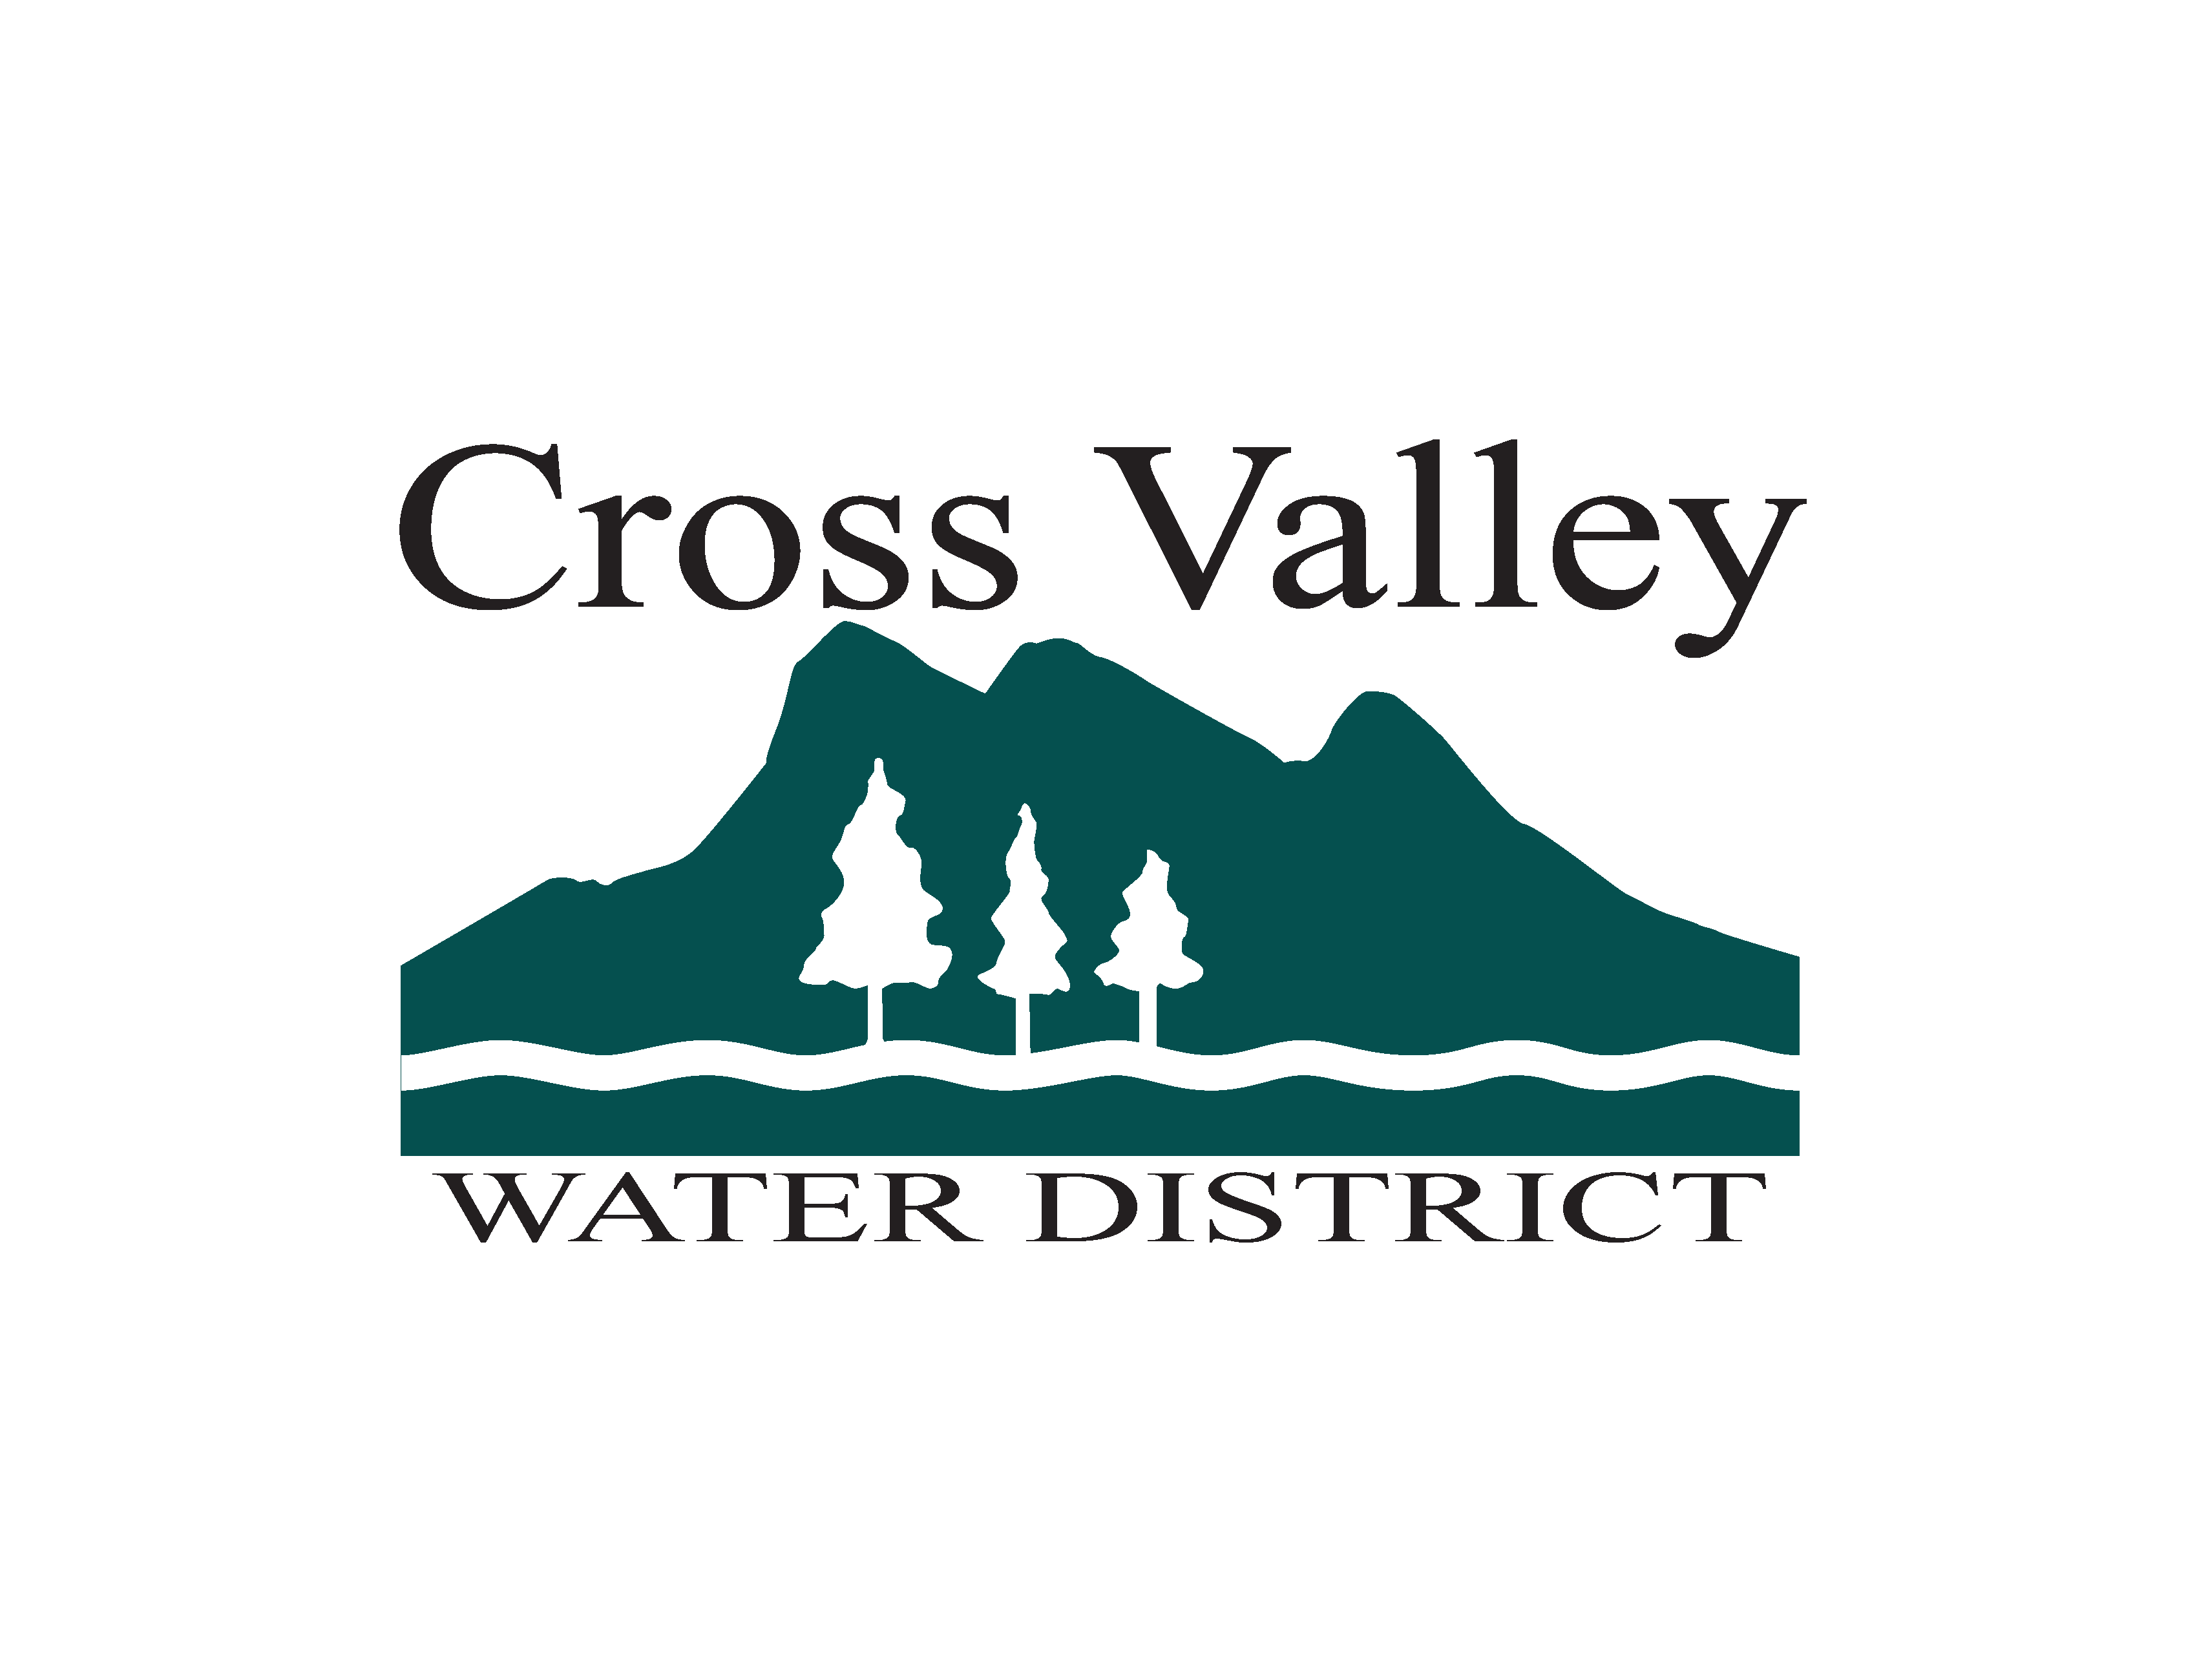 Cross Valley Water District jobs